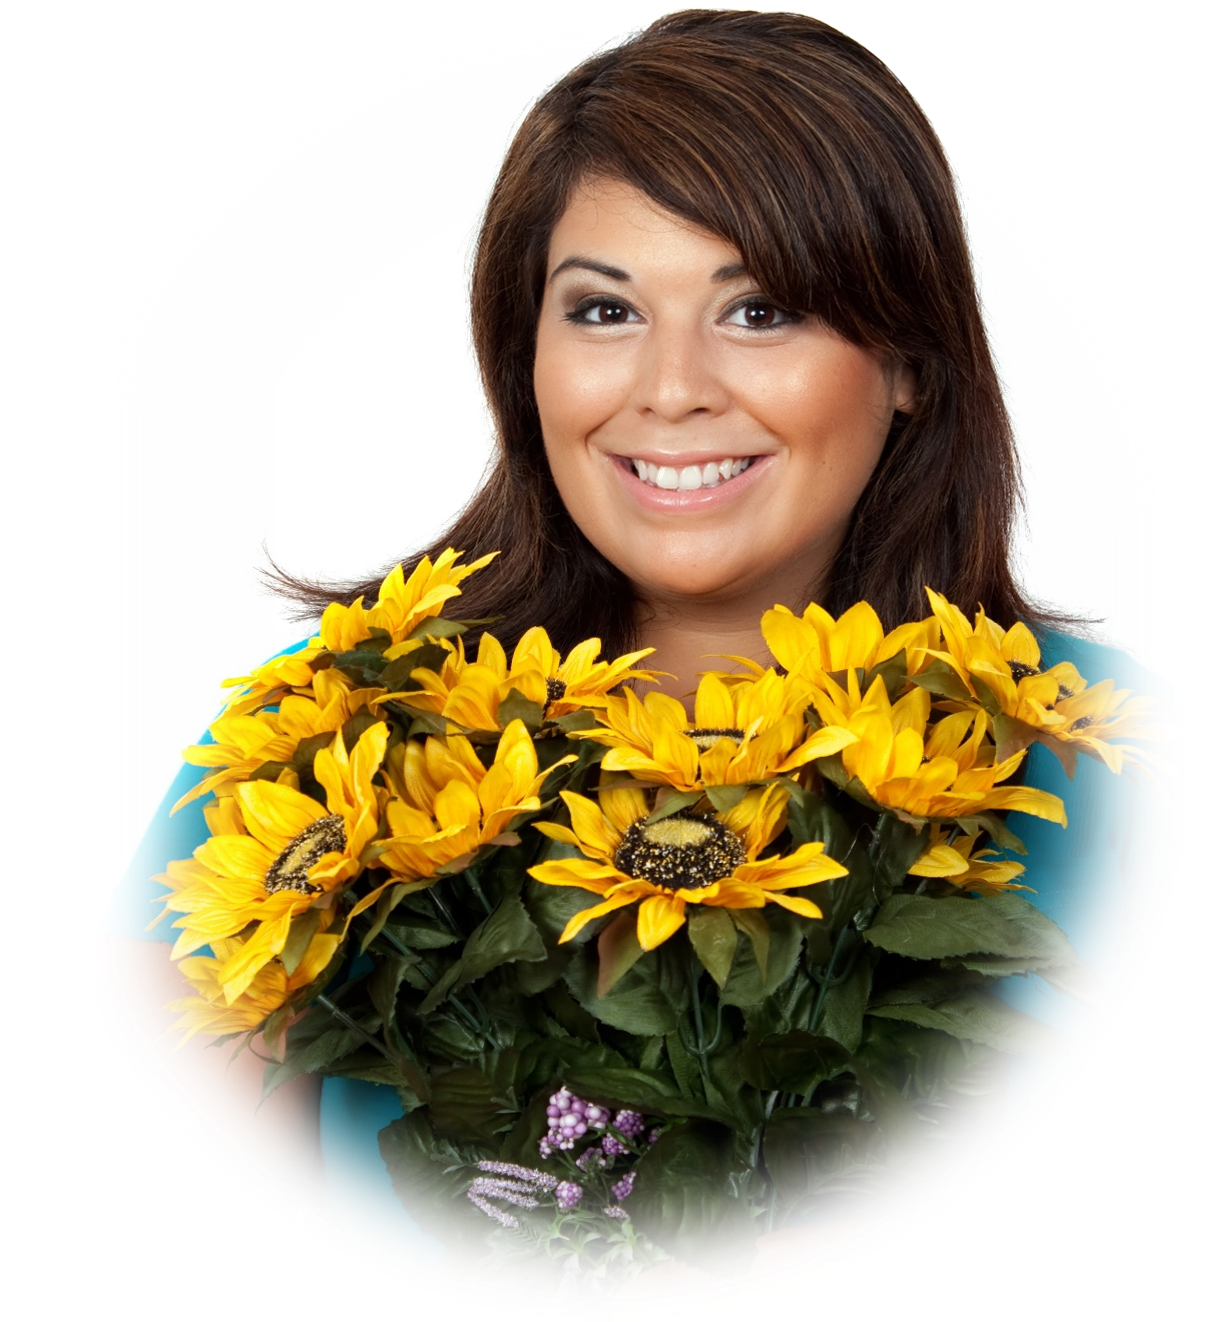 Hispanic woman with sunflowers